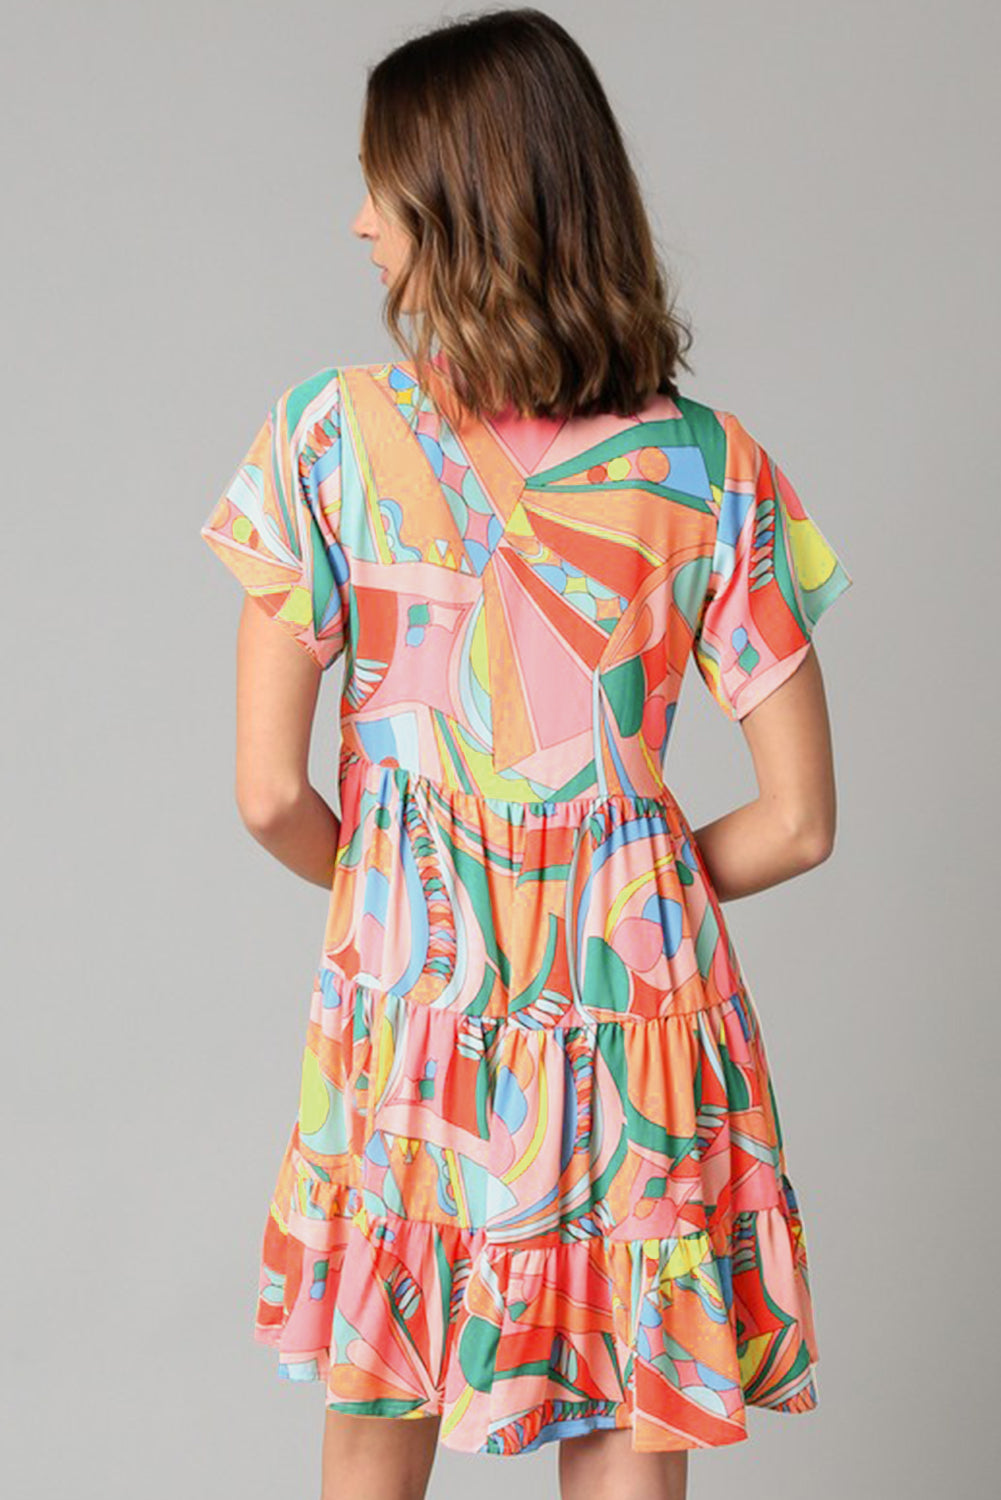 Mehrfarbiges, ausgestelltes Kleid mit abstraktem geometrischem Print und Quastenbindung